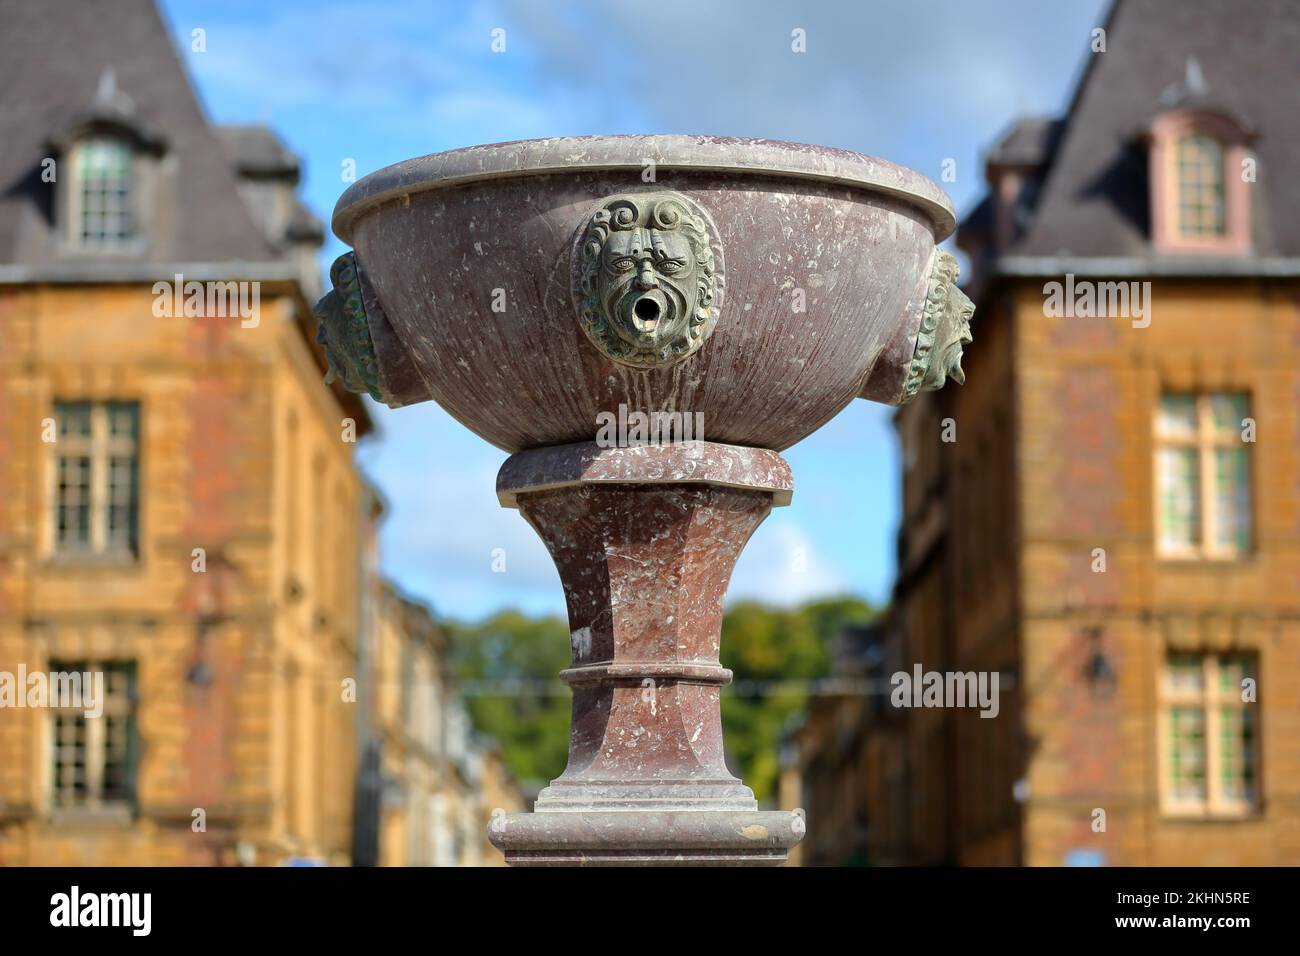 Gros plan sur les détails de la fontaine située place Ducale dans Charleville Mézières, Ardennes, Grand est, France Banque D'Images